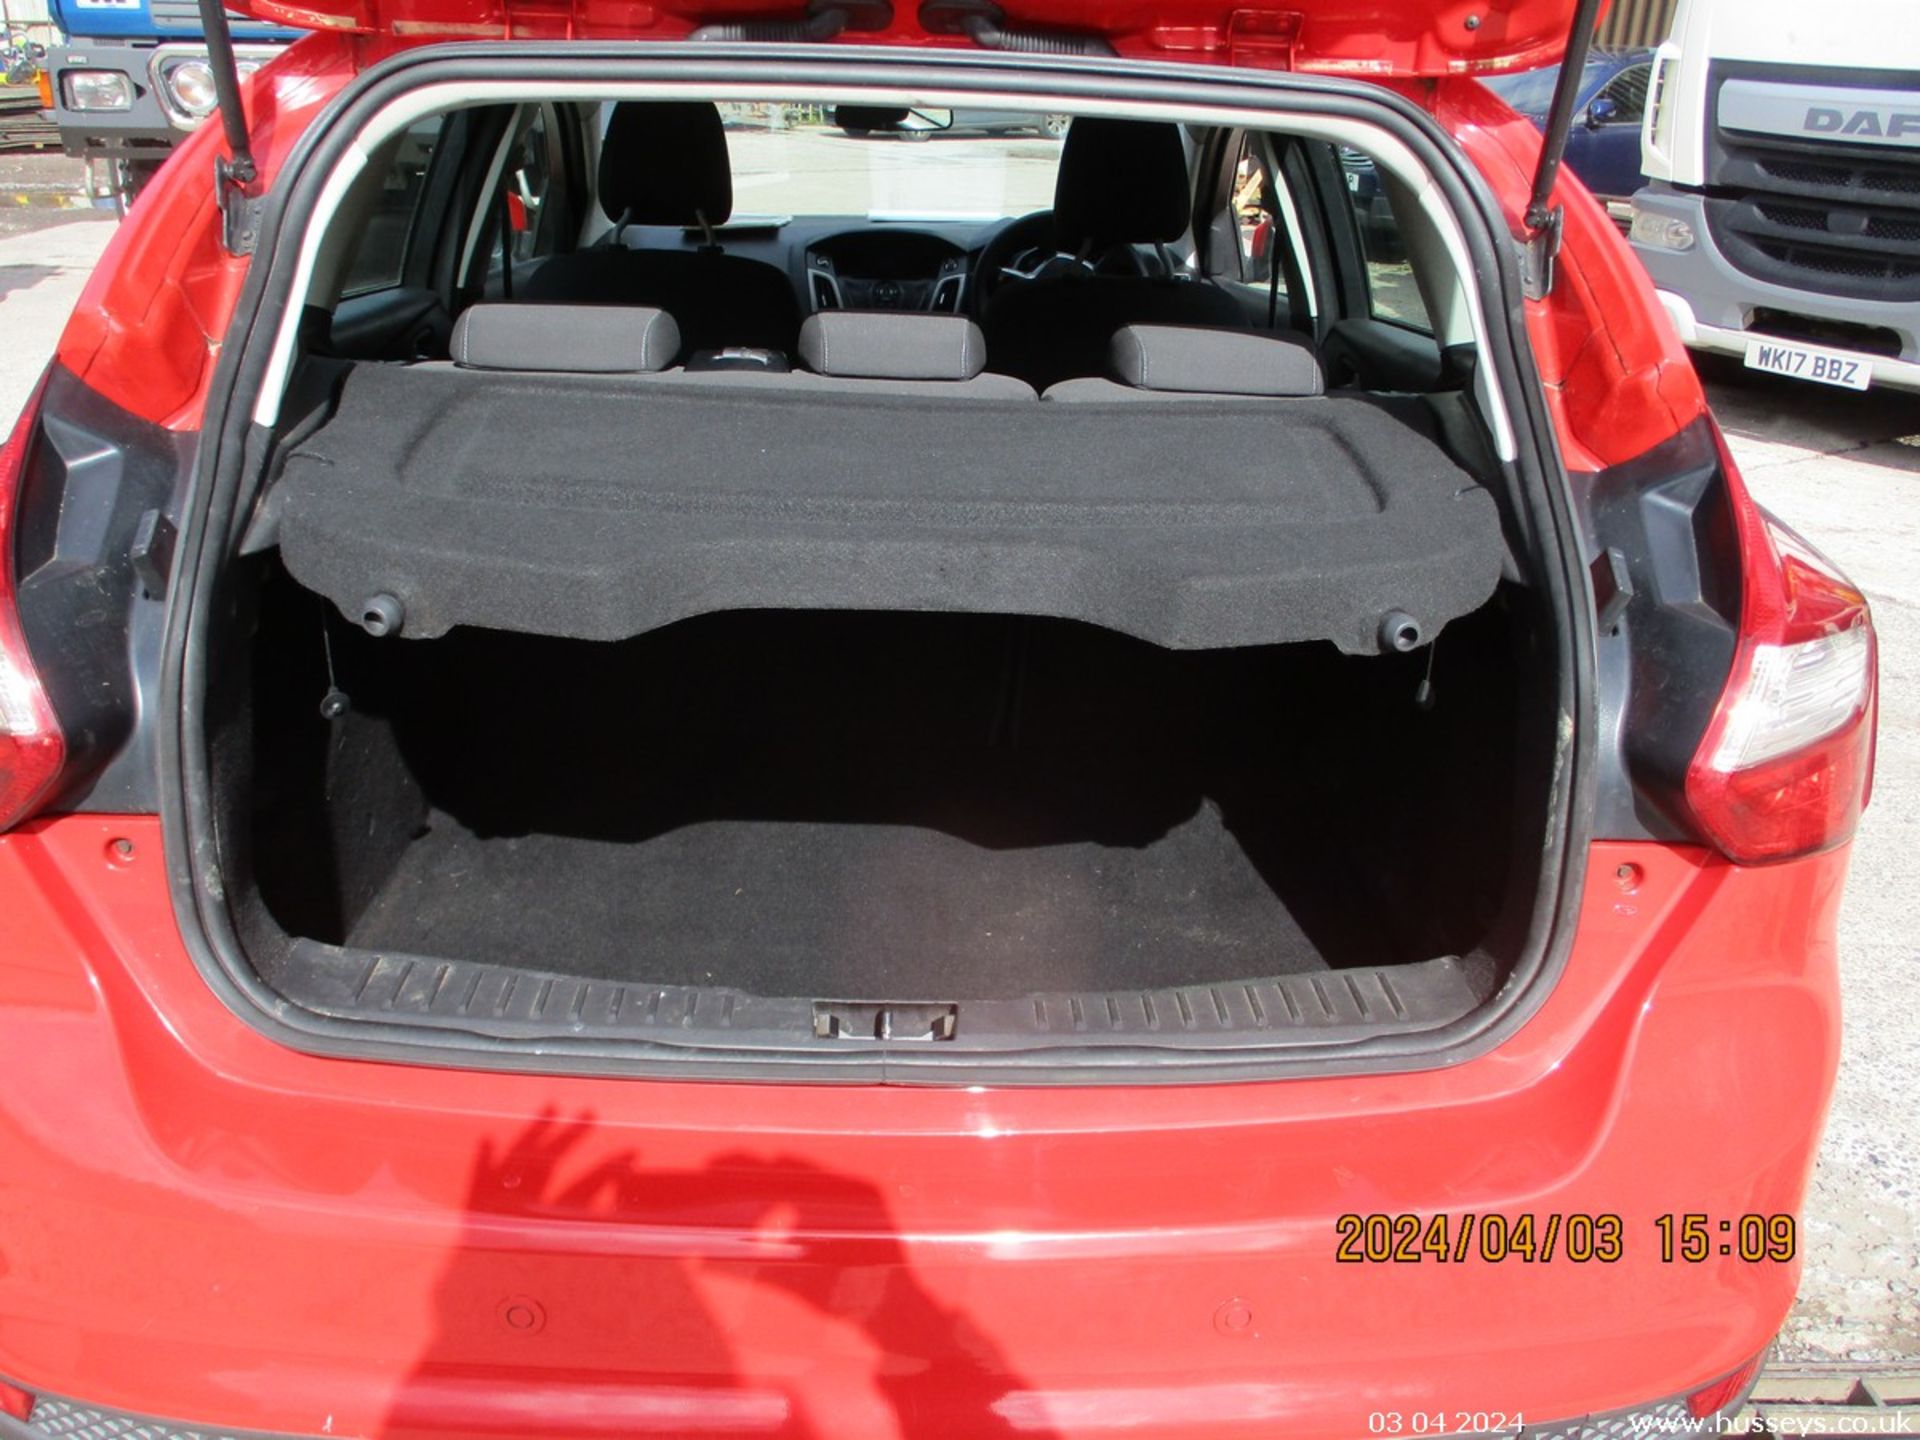 13/13 FORD FOCUS EDGE TDCI 115 - 1560cc 5dr Hatchback (Red, 186k) - Image 11 of 17